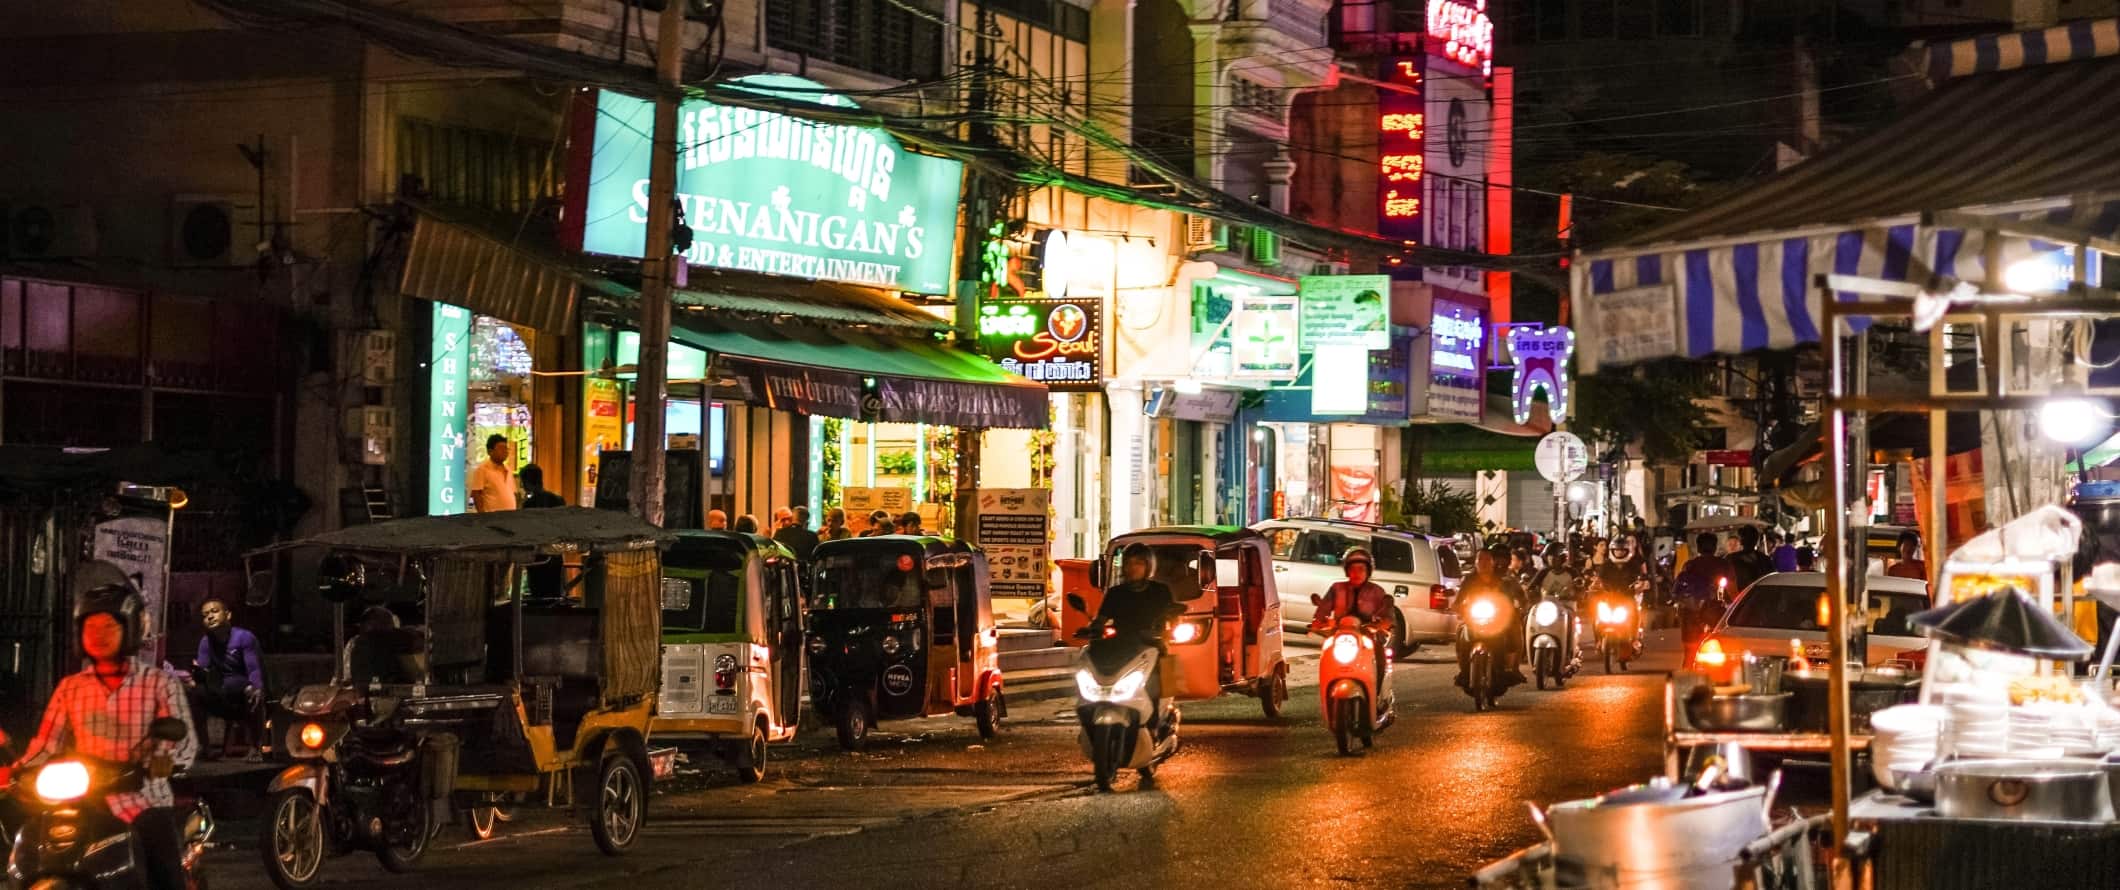 Ciclomotores, motocicletas e tuk-tuks circulam por uma rua iluminada à noite em Phnom Penh, capital do Camboja.